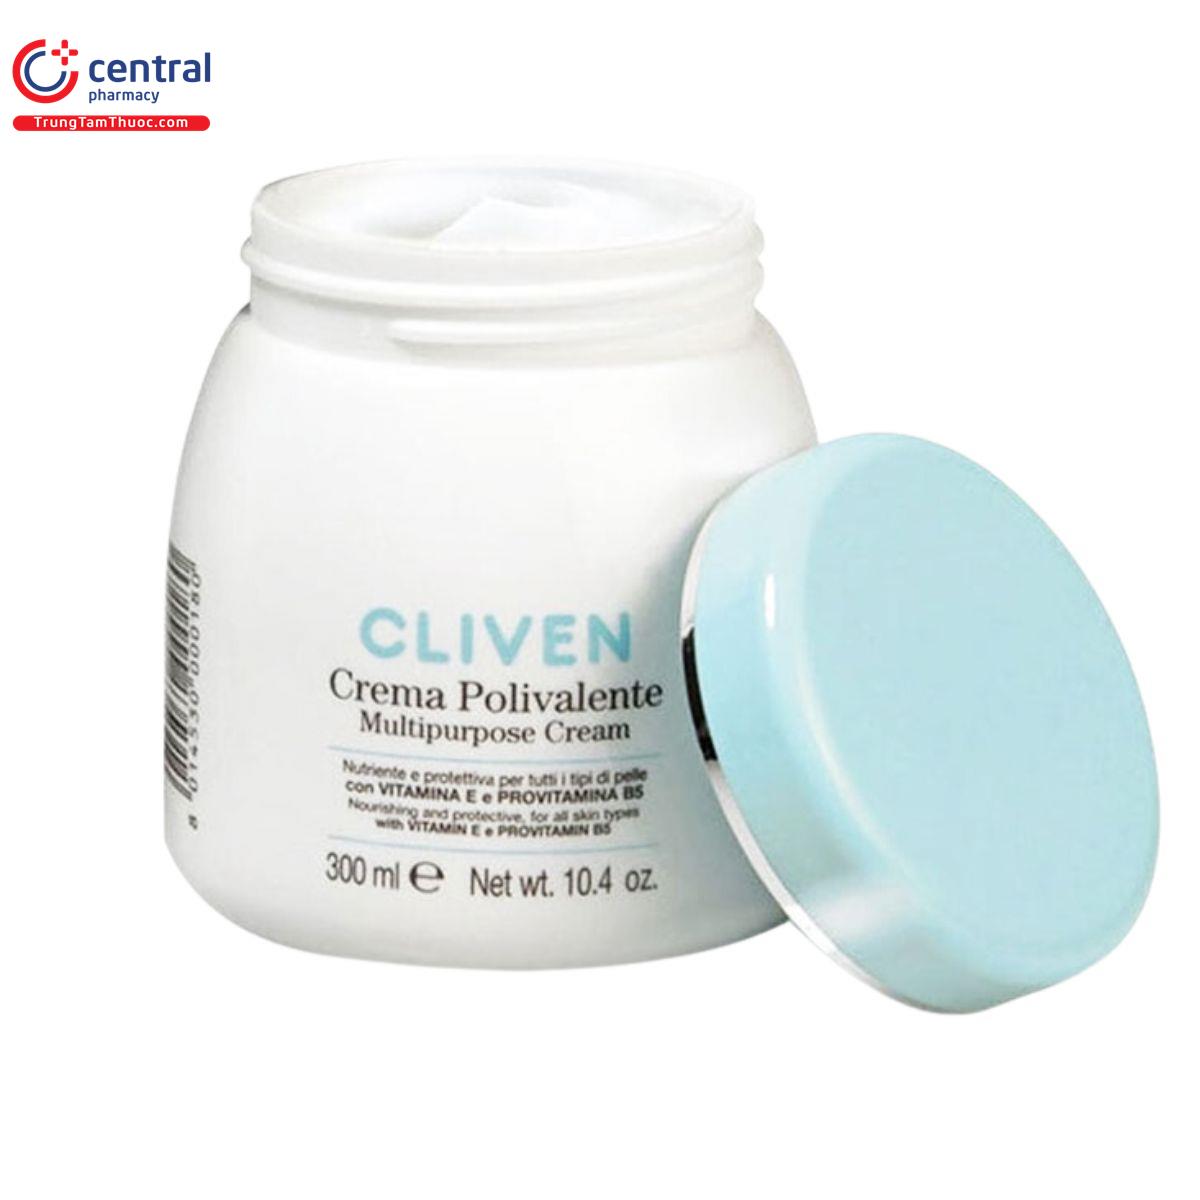 cliven crema polivalente multipurpose cream 7 O6026